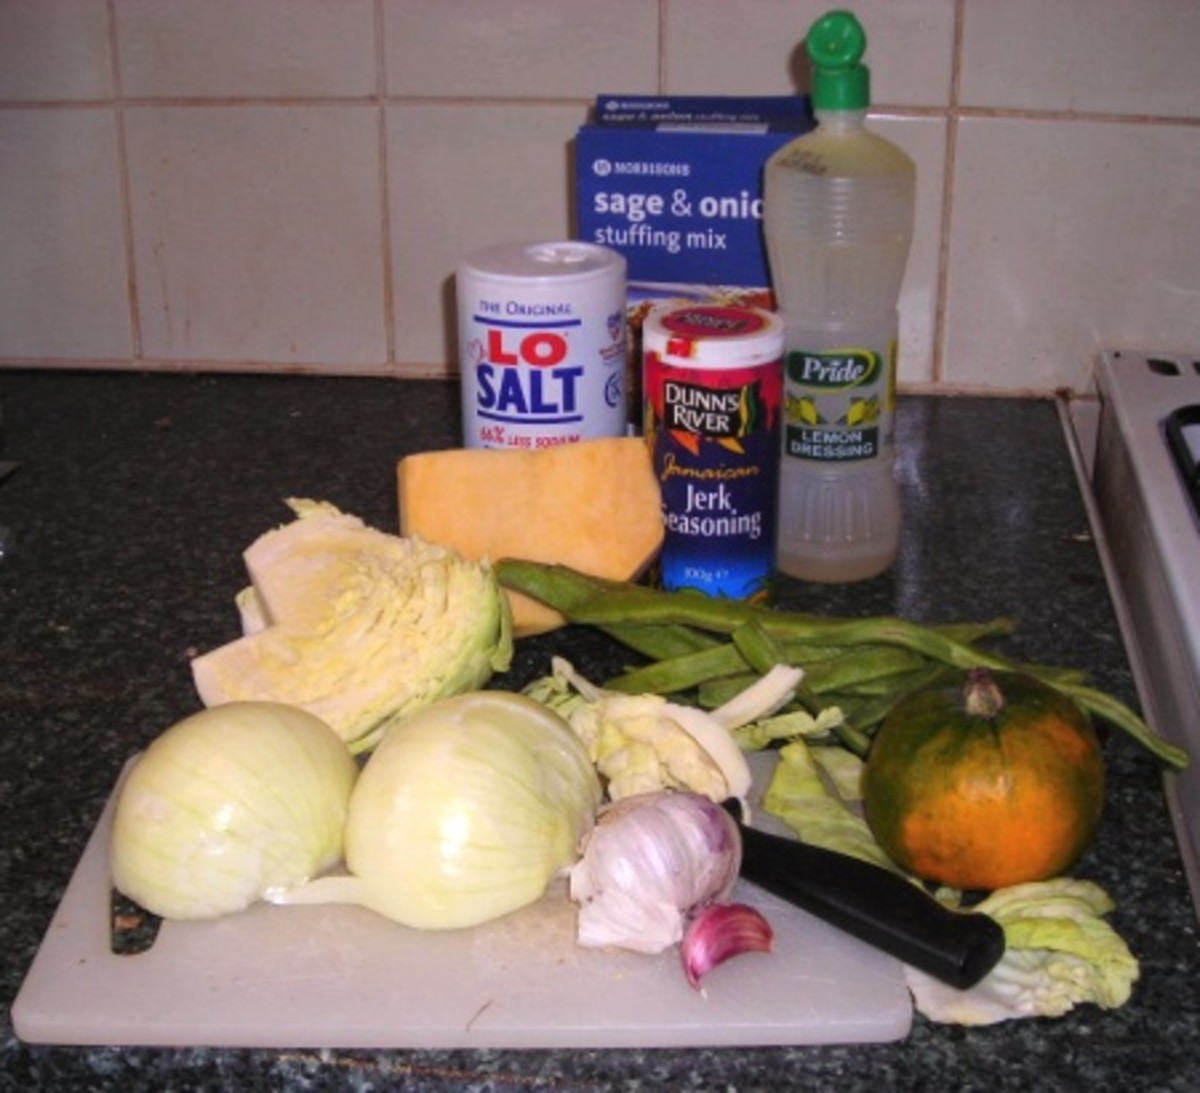 Ingredients for roast turkey or chicken dinner